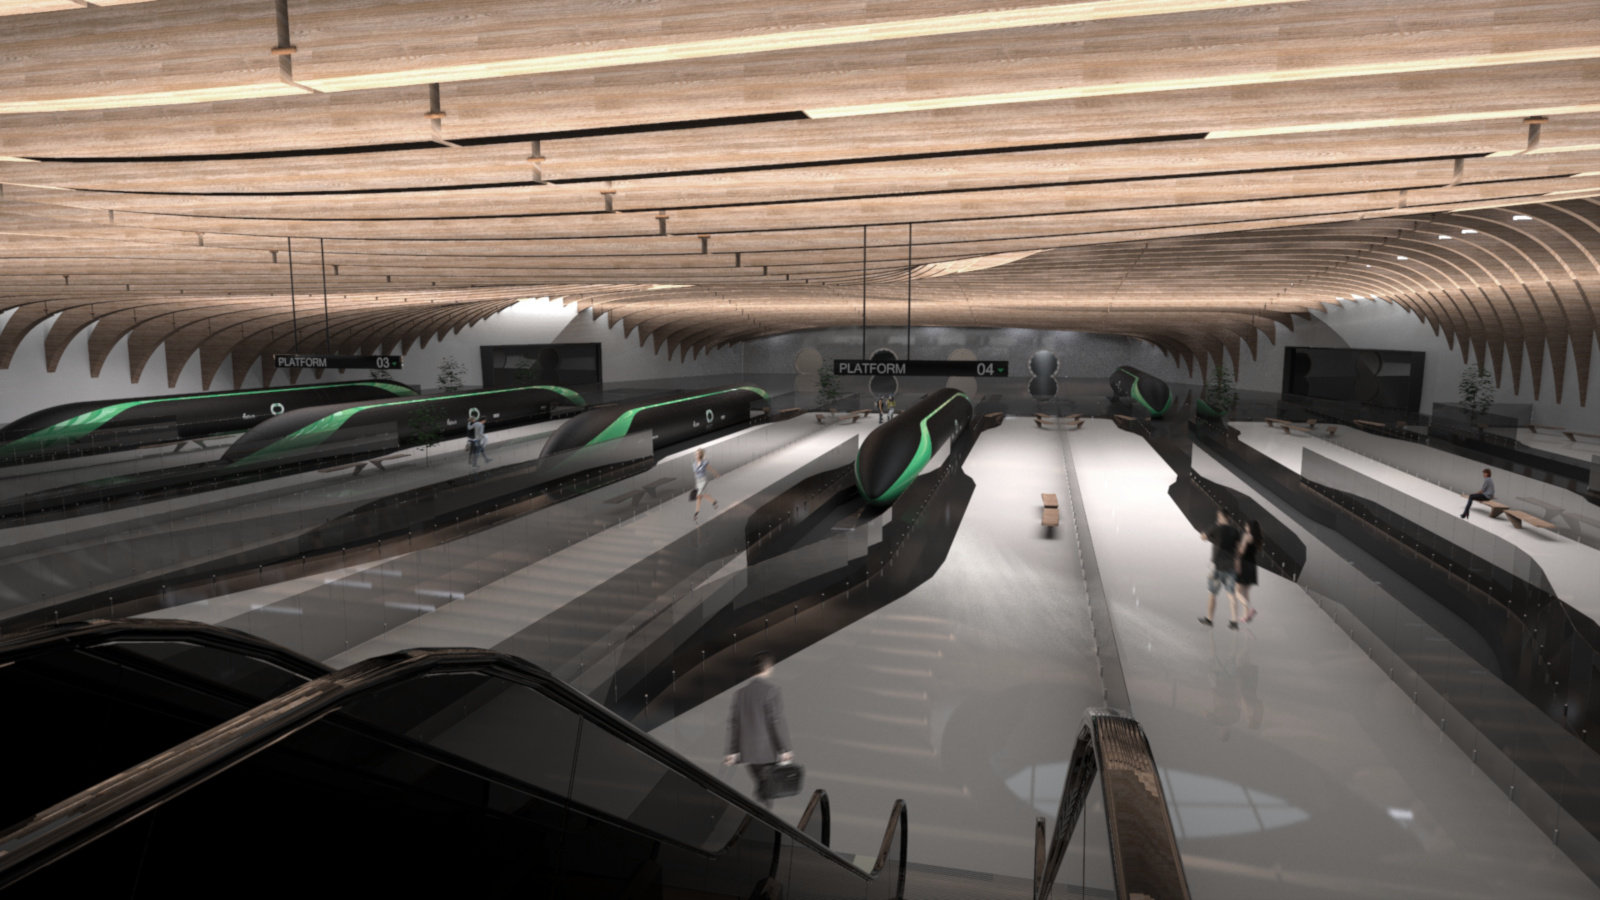 Mời xem video về trạm tàu tương lai Hyperloop mà SpaceX đang phát triển